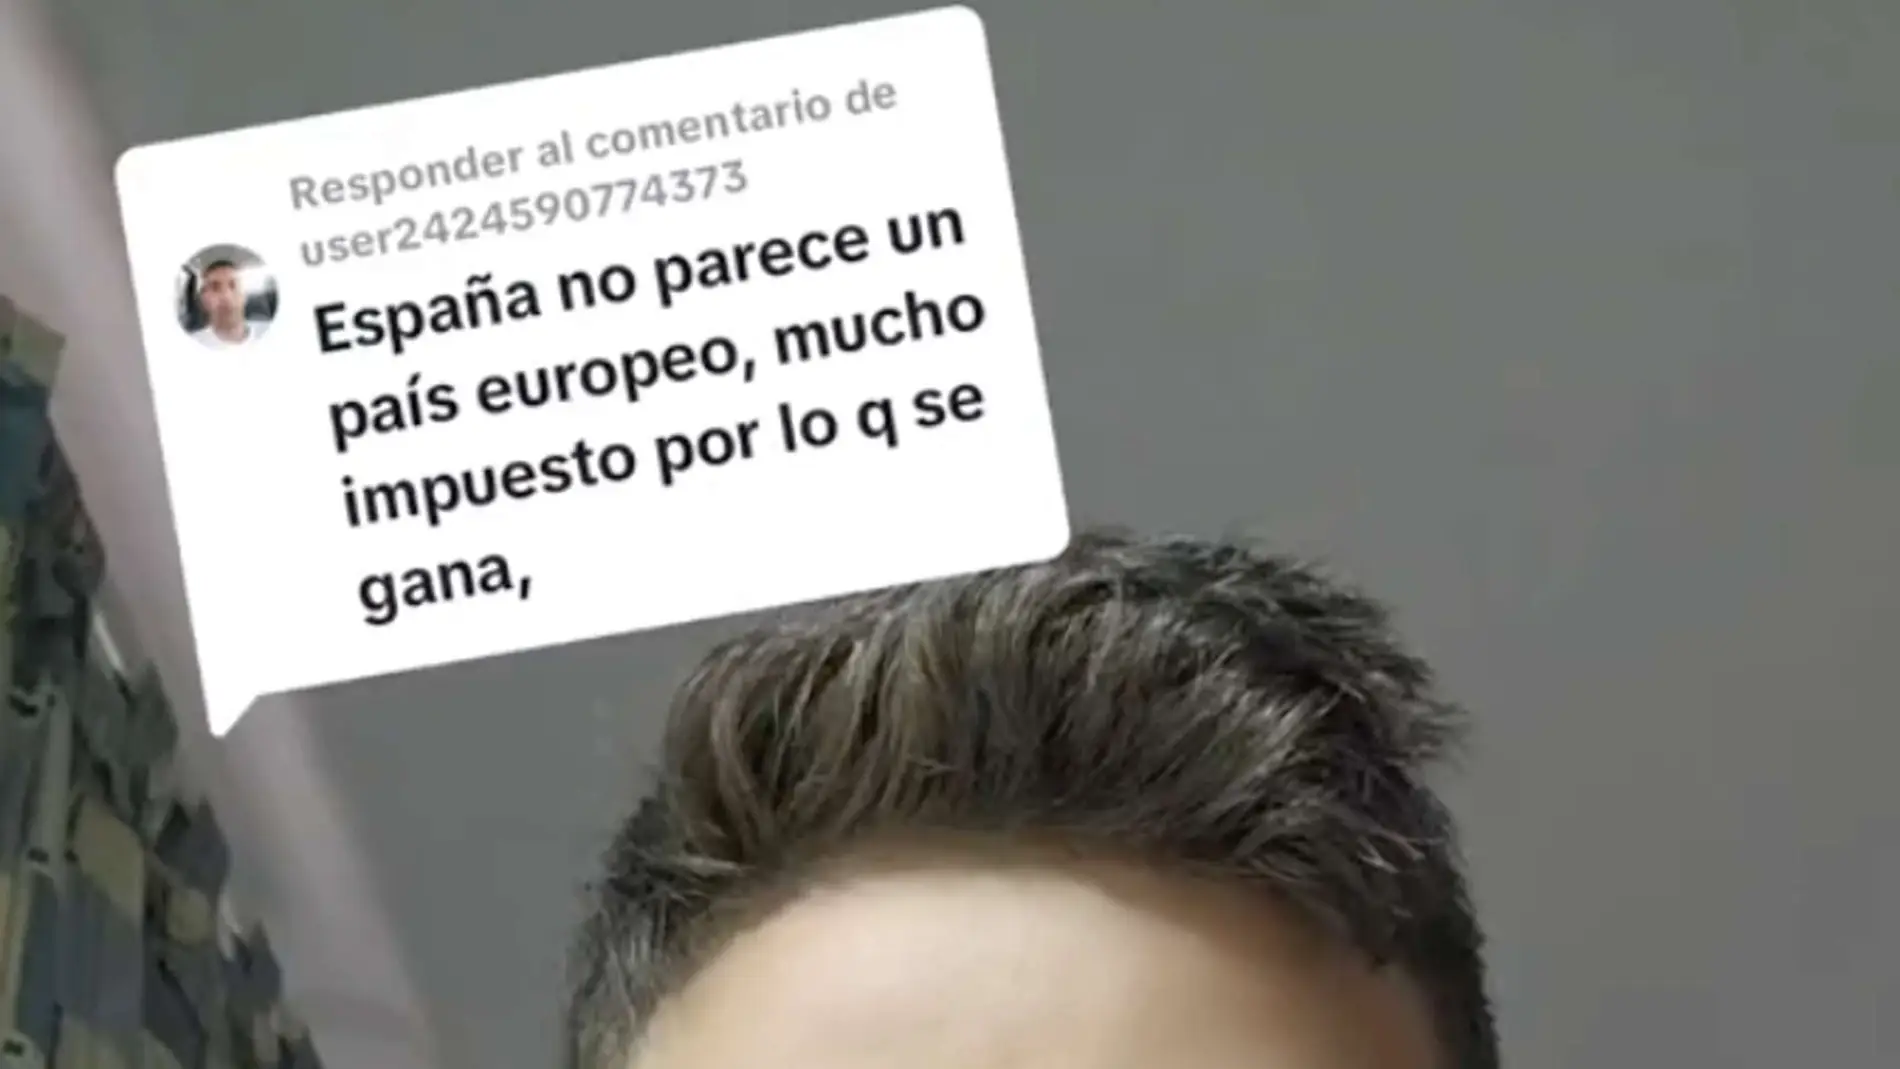 El tiktoker respondió al usuario que dijo que España "no parece un país europeo" por los impuestos que se pagan